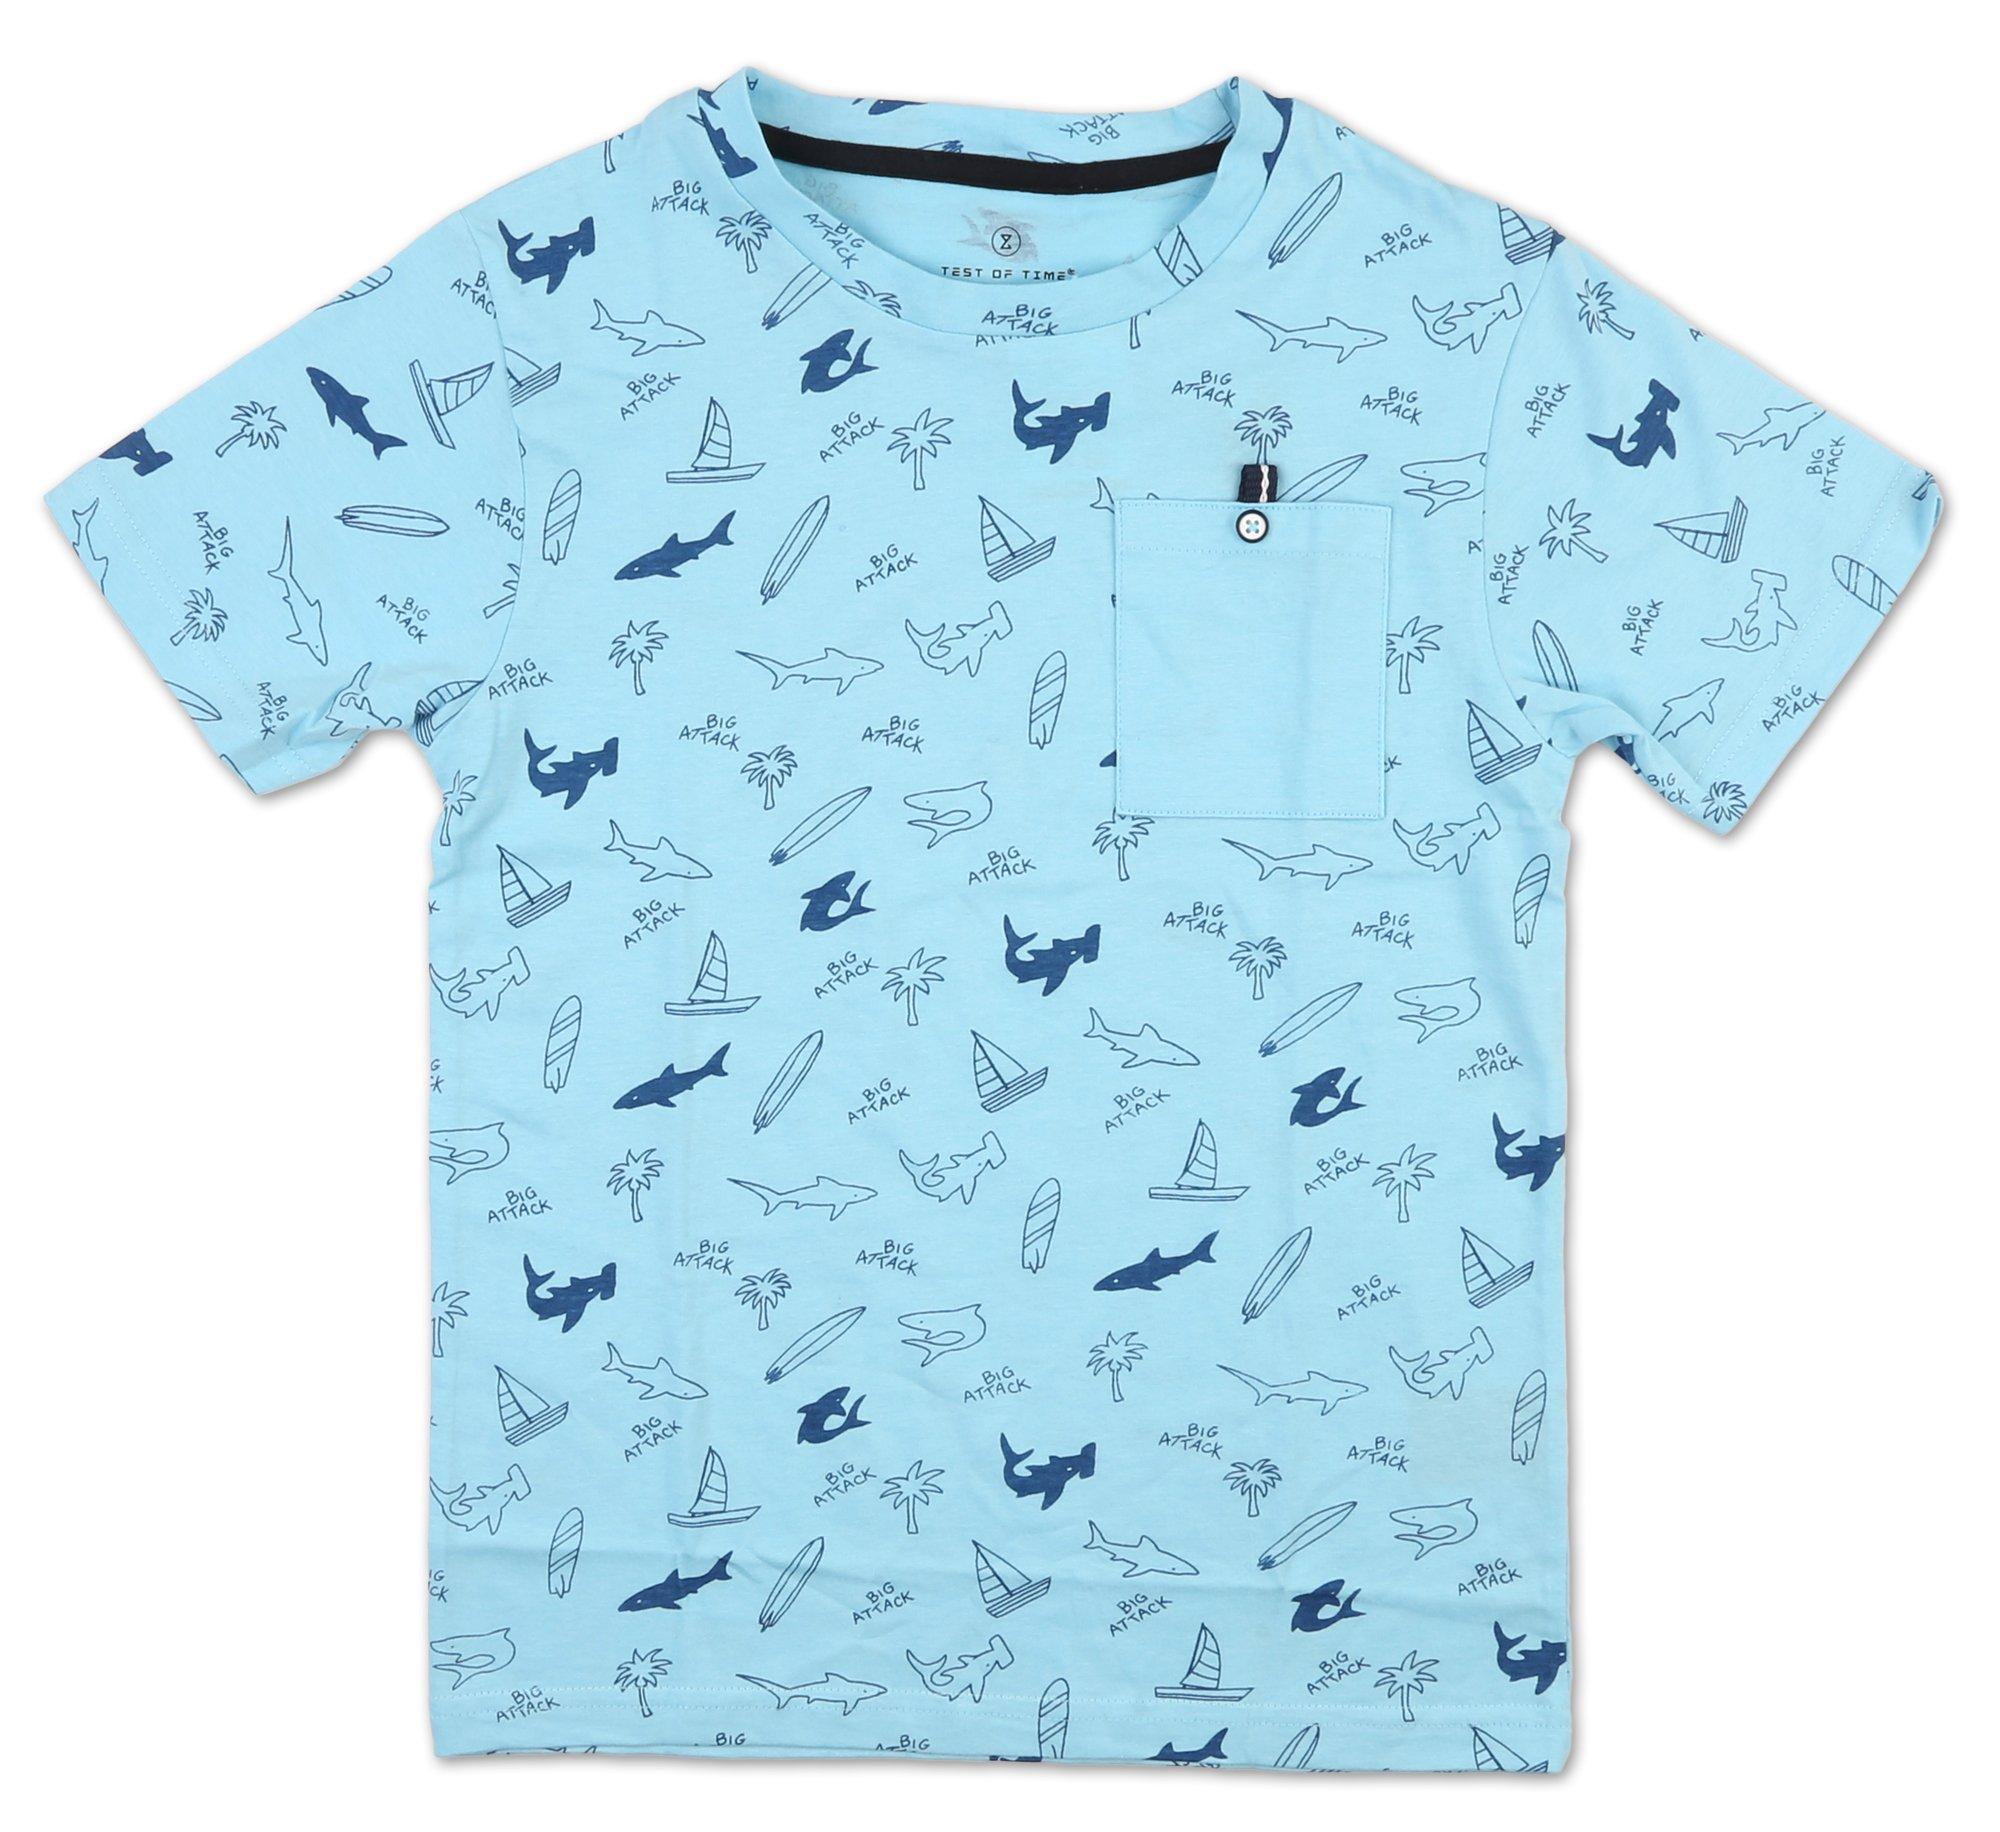 Boys Shark Graphic Tee - Blue